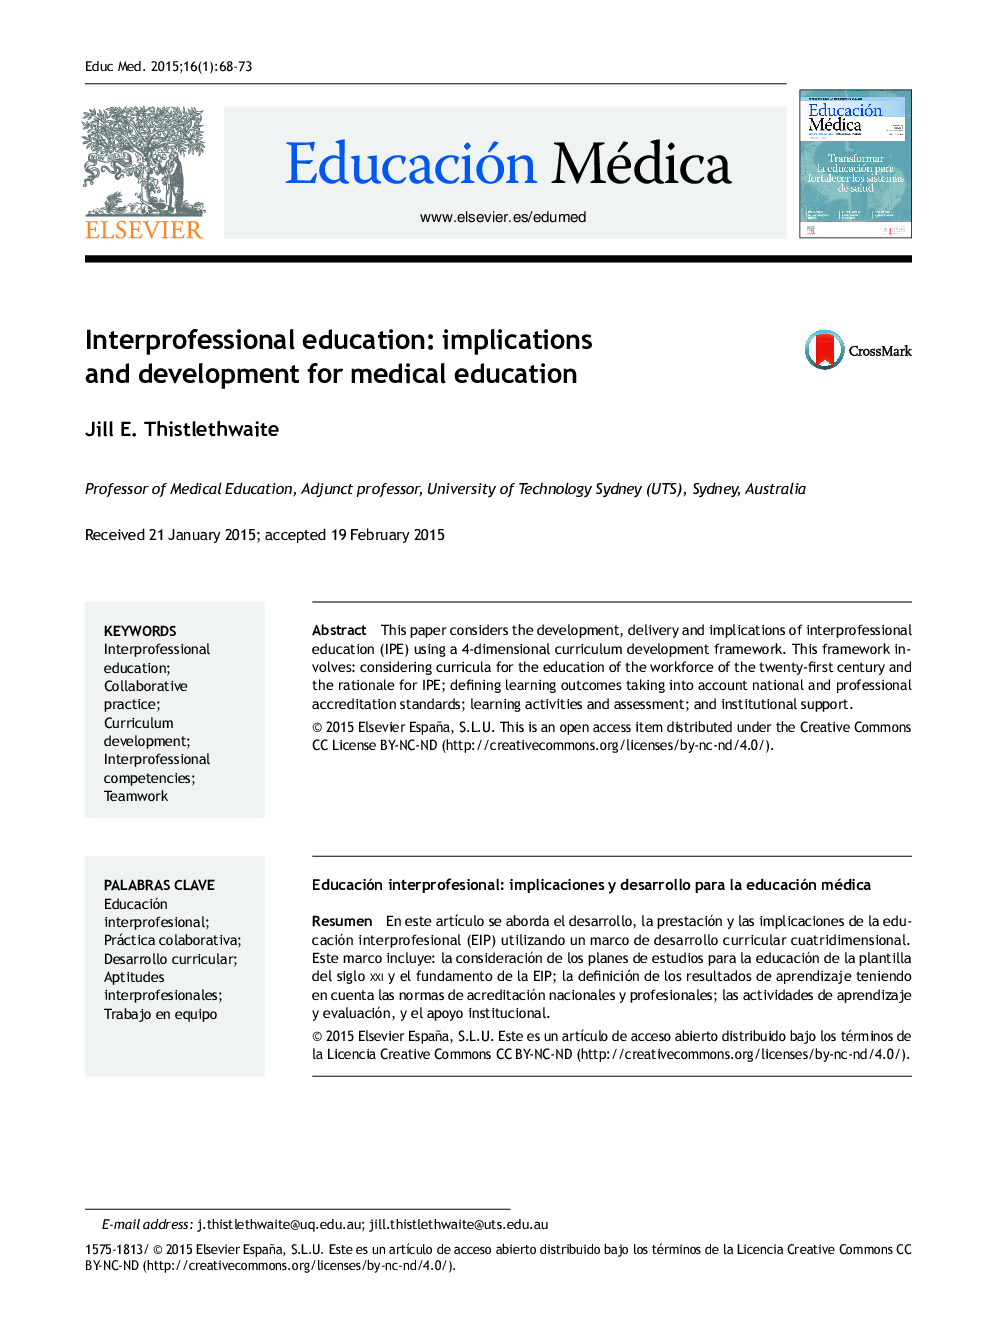 آموزش بین الملل: پیامدها و پیشرفت برای آموزش پزشکی 